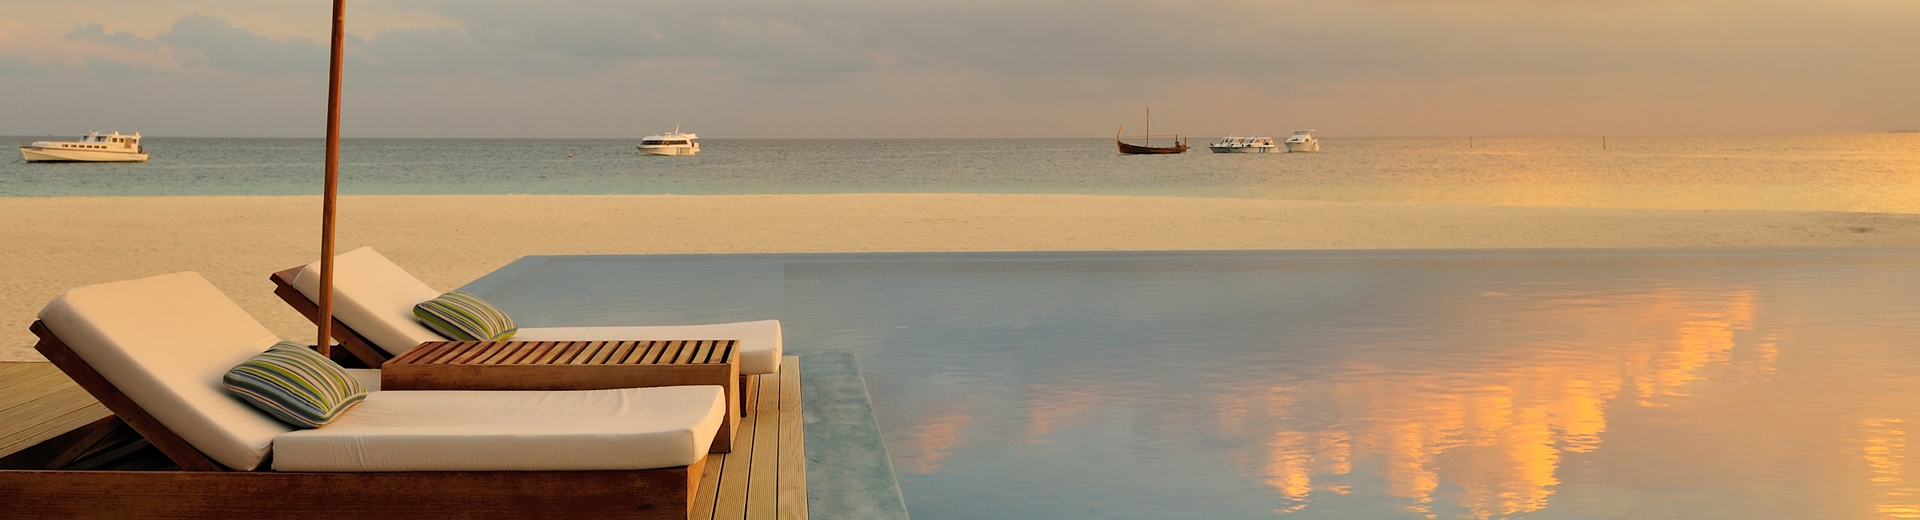 馬爾地夫旅遊飯店推薦-薇娜沙露島